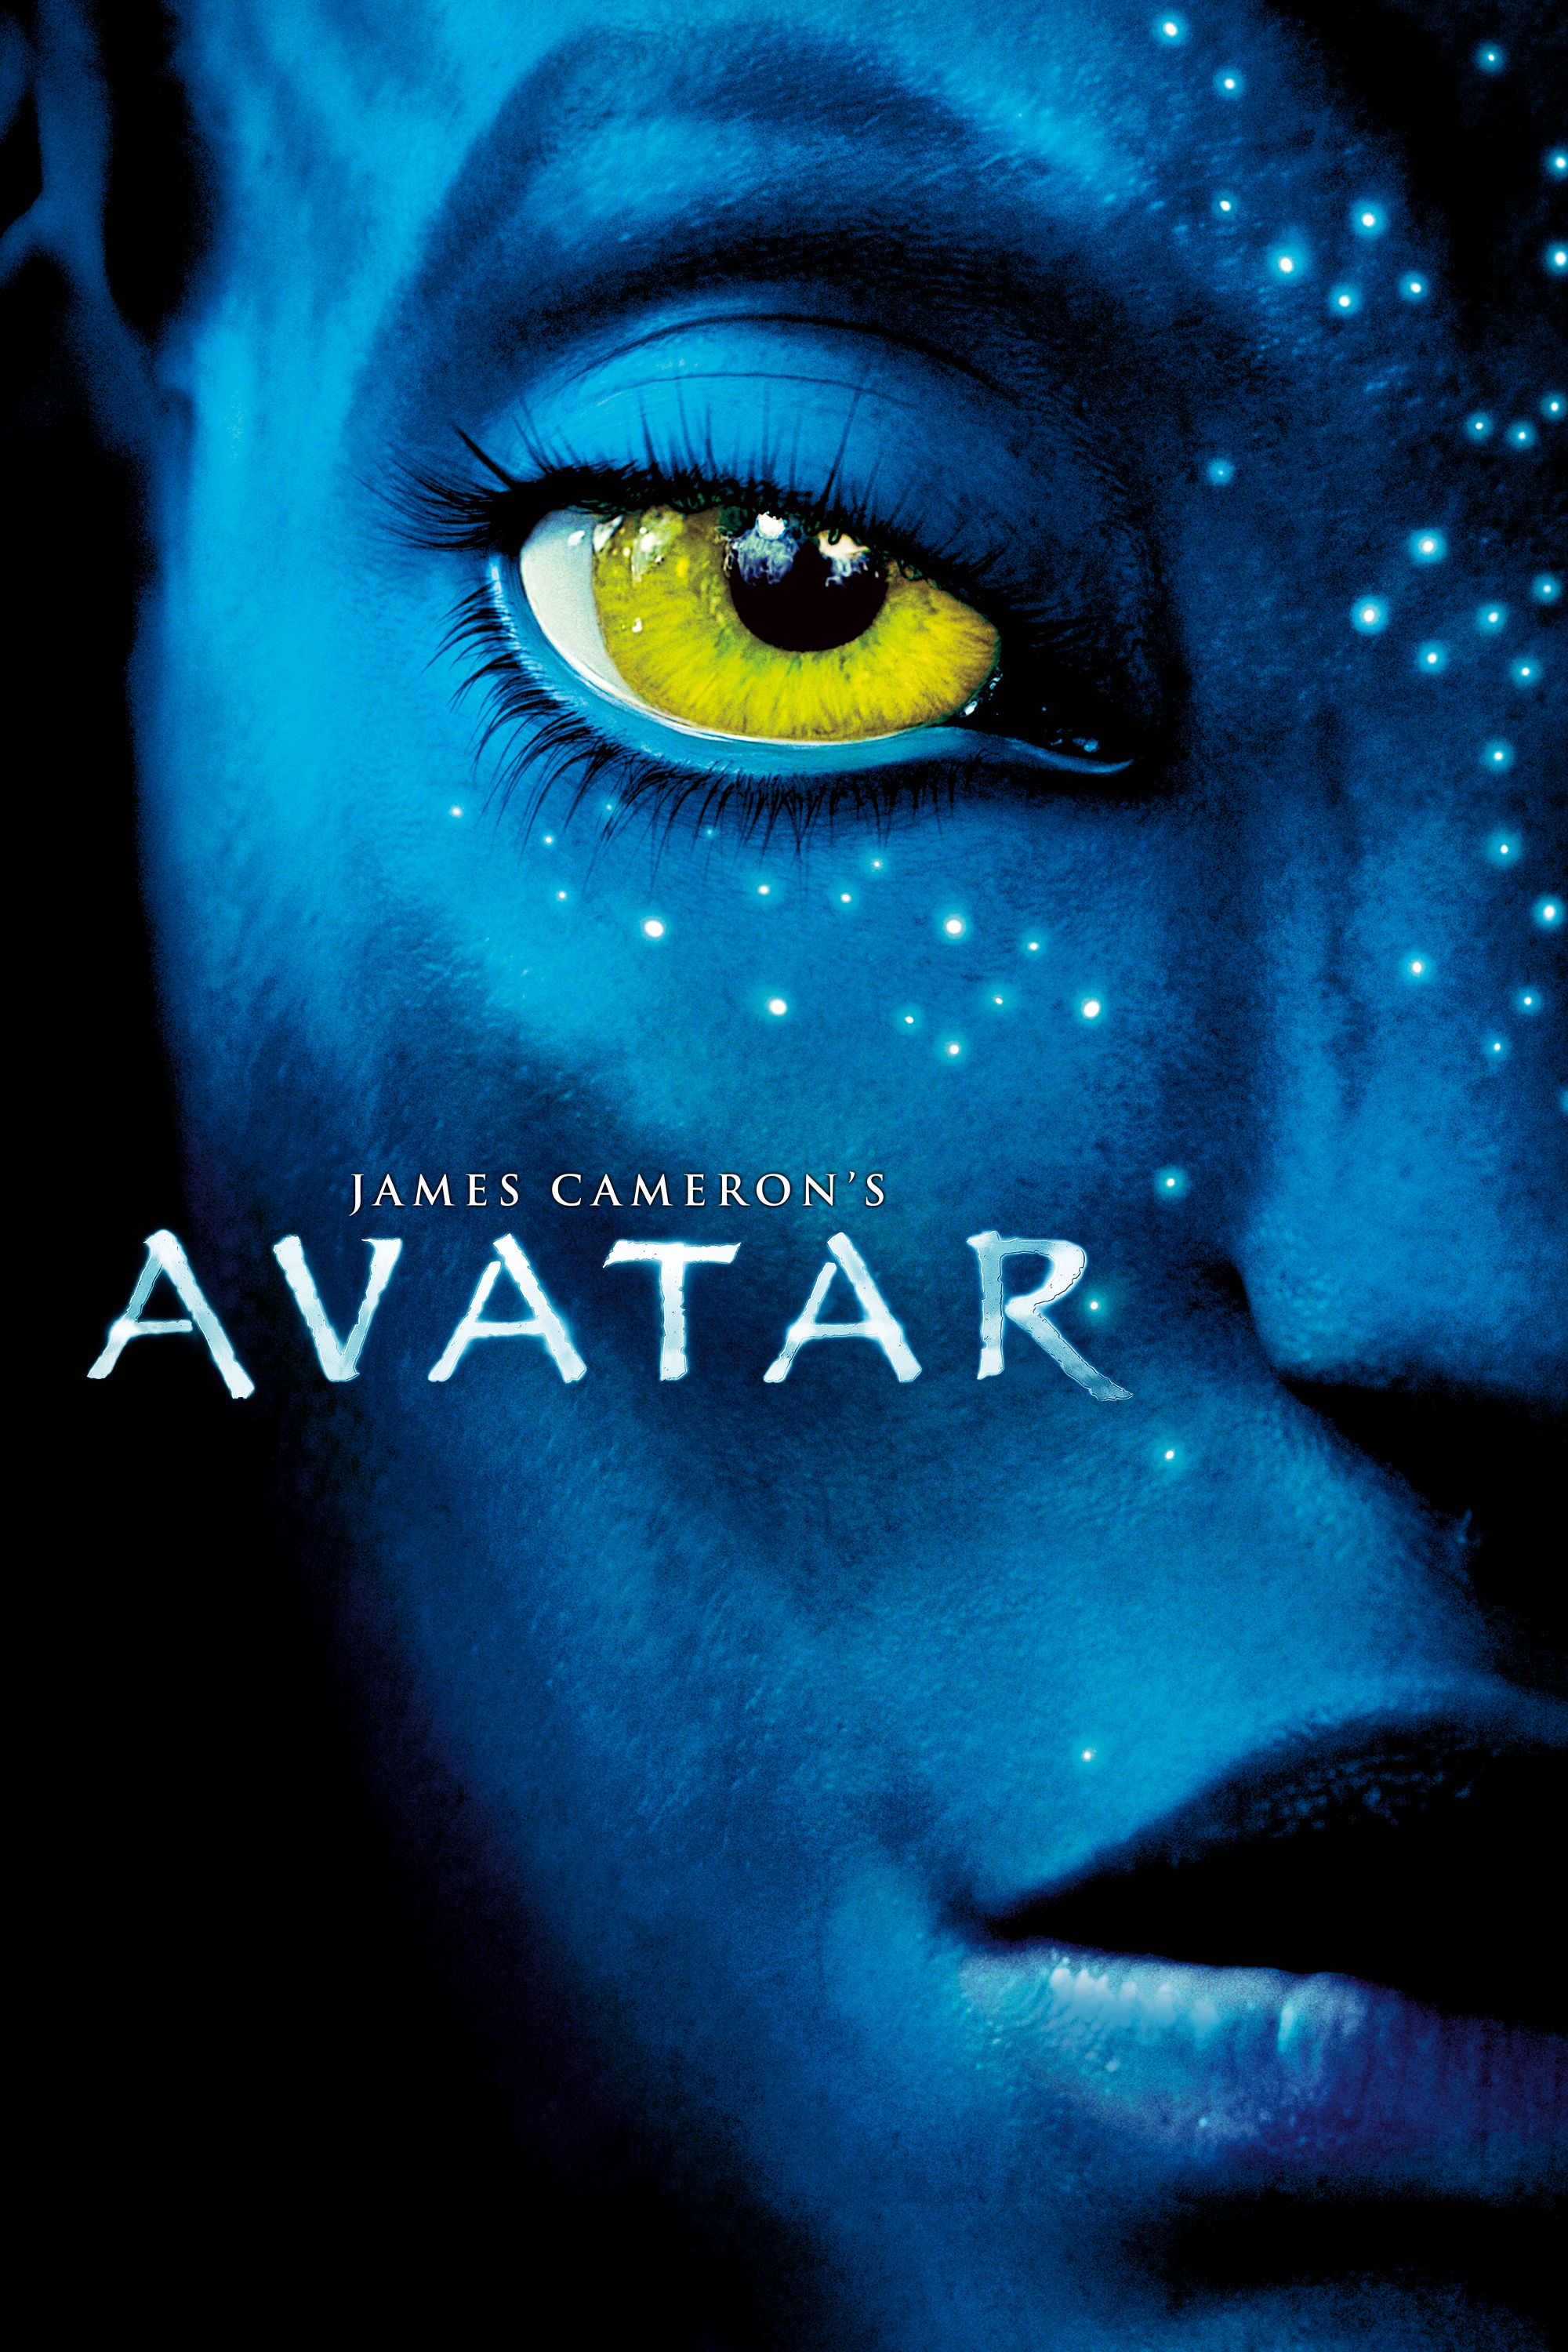 Avatar 2 bị cáo buộc phân biệt chủng tộc  Giải trí